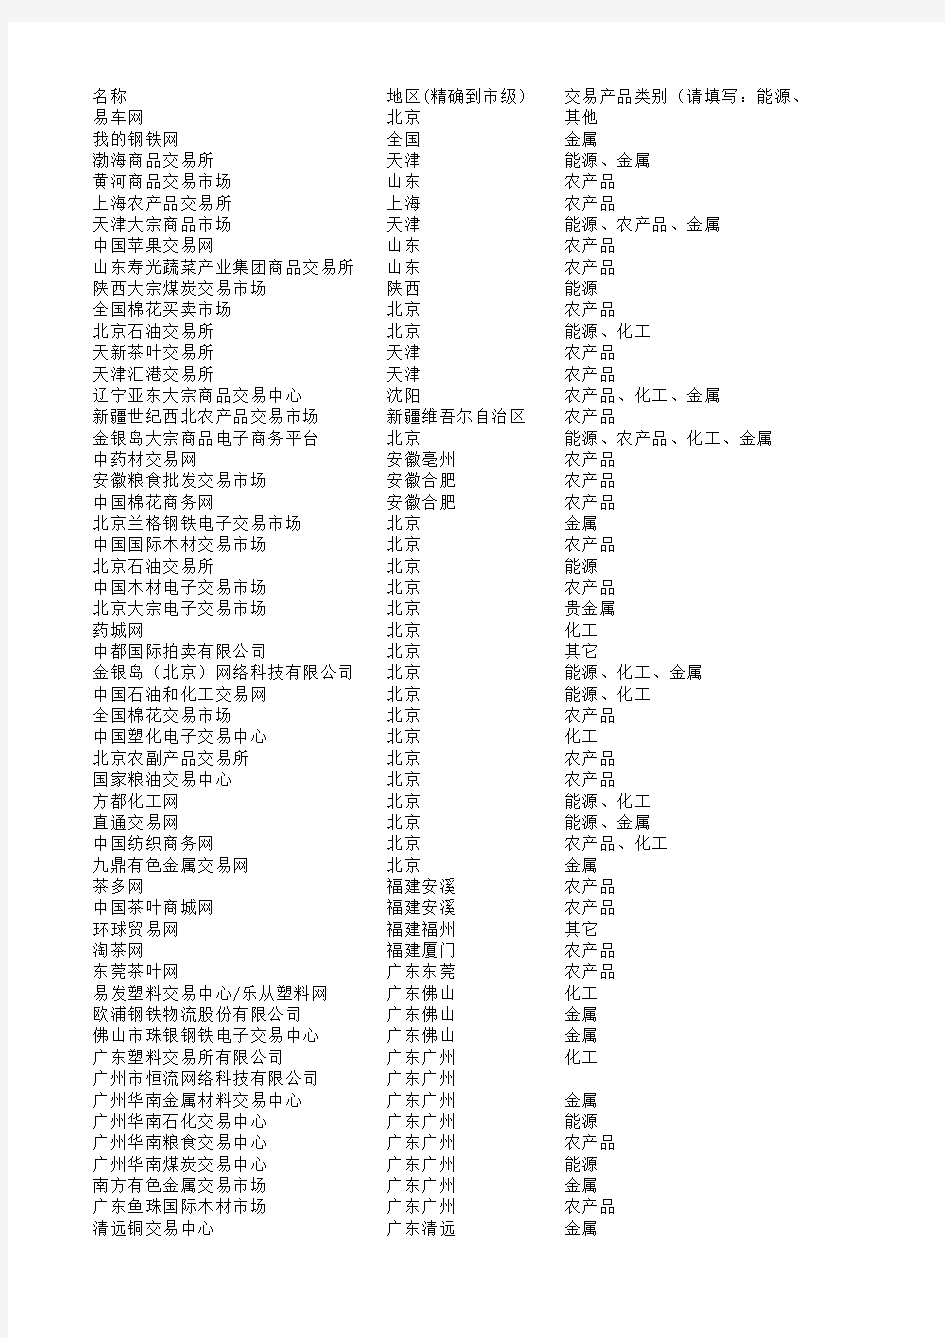 中国大宗商品交易市场名单-Version 3.0